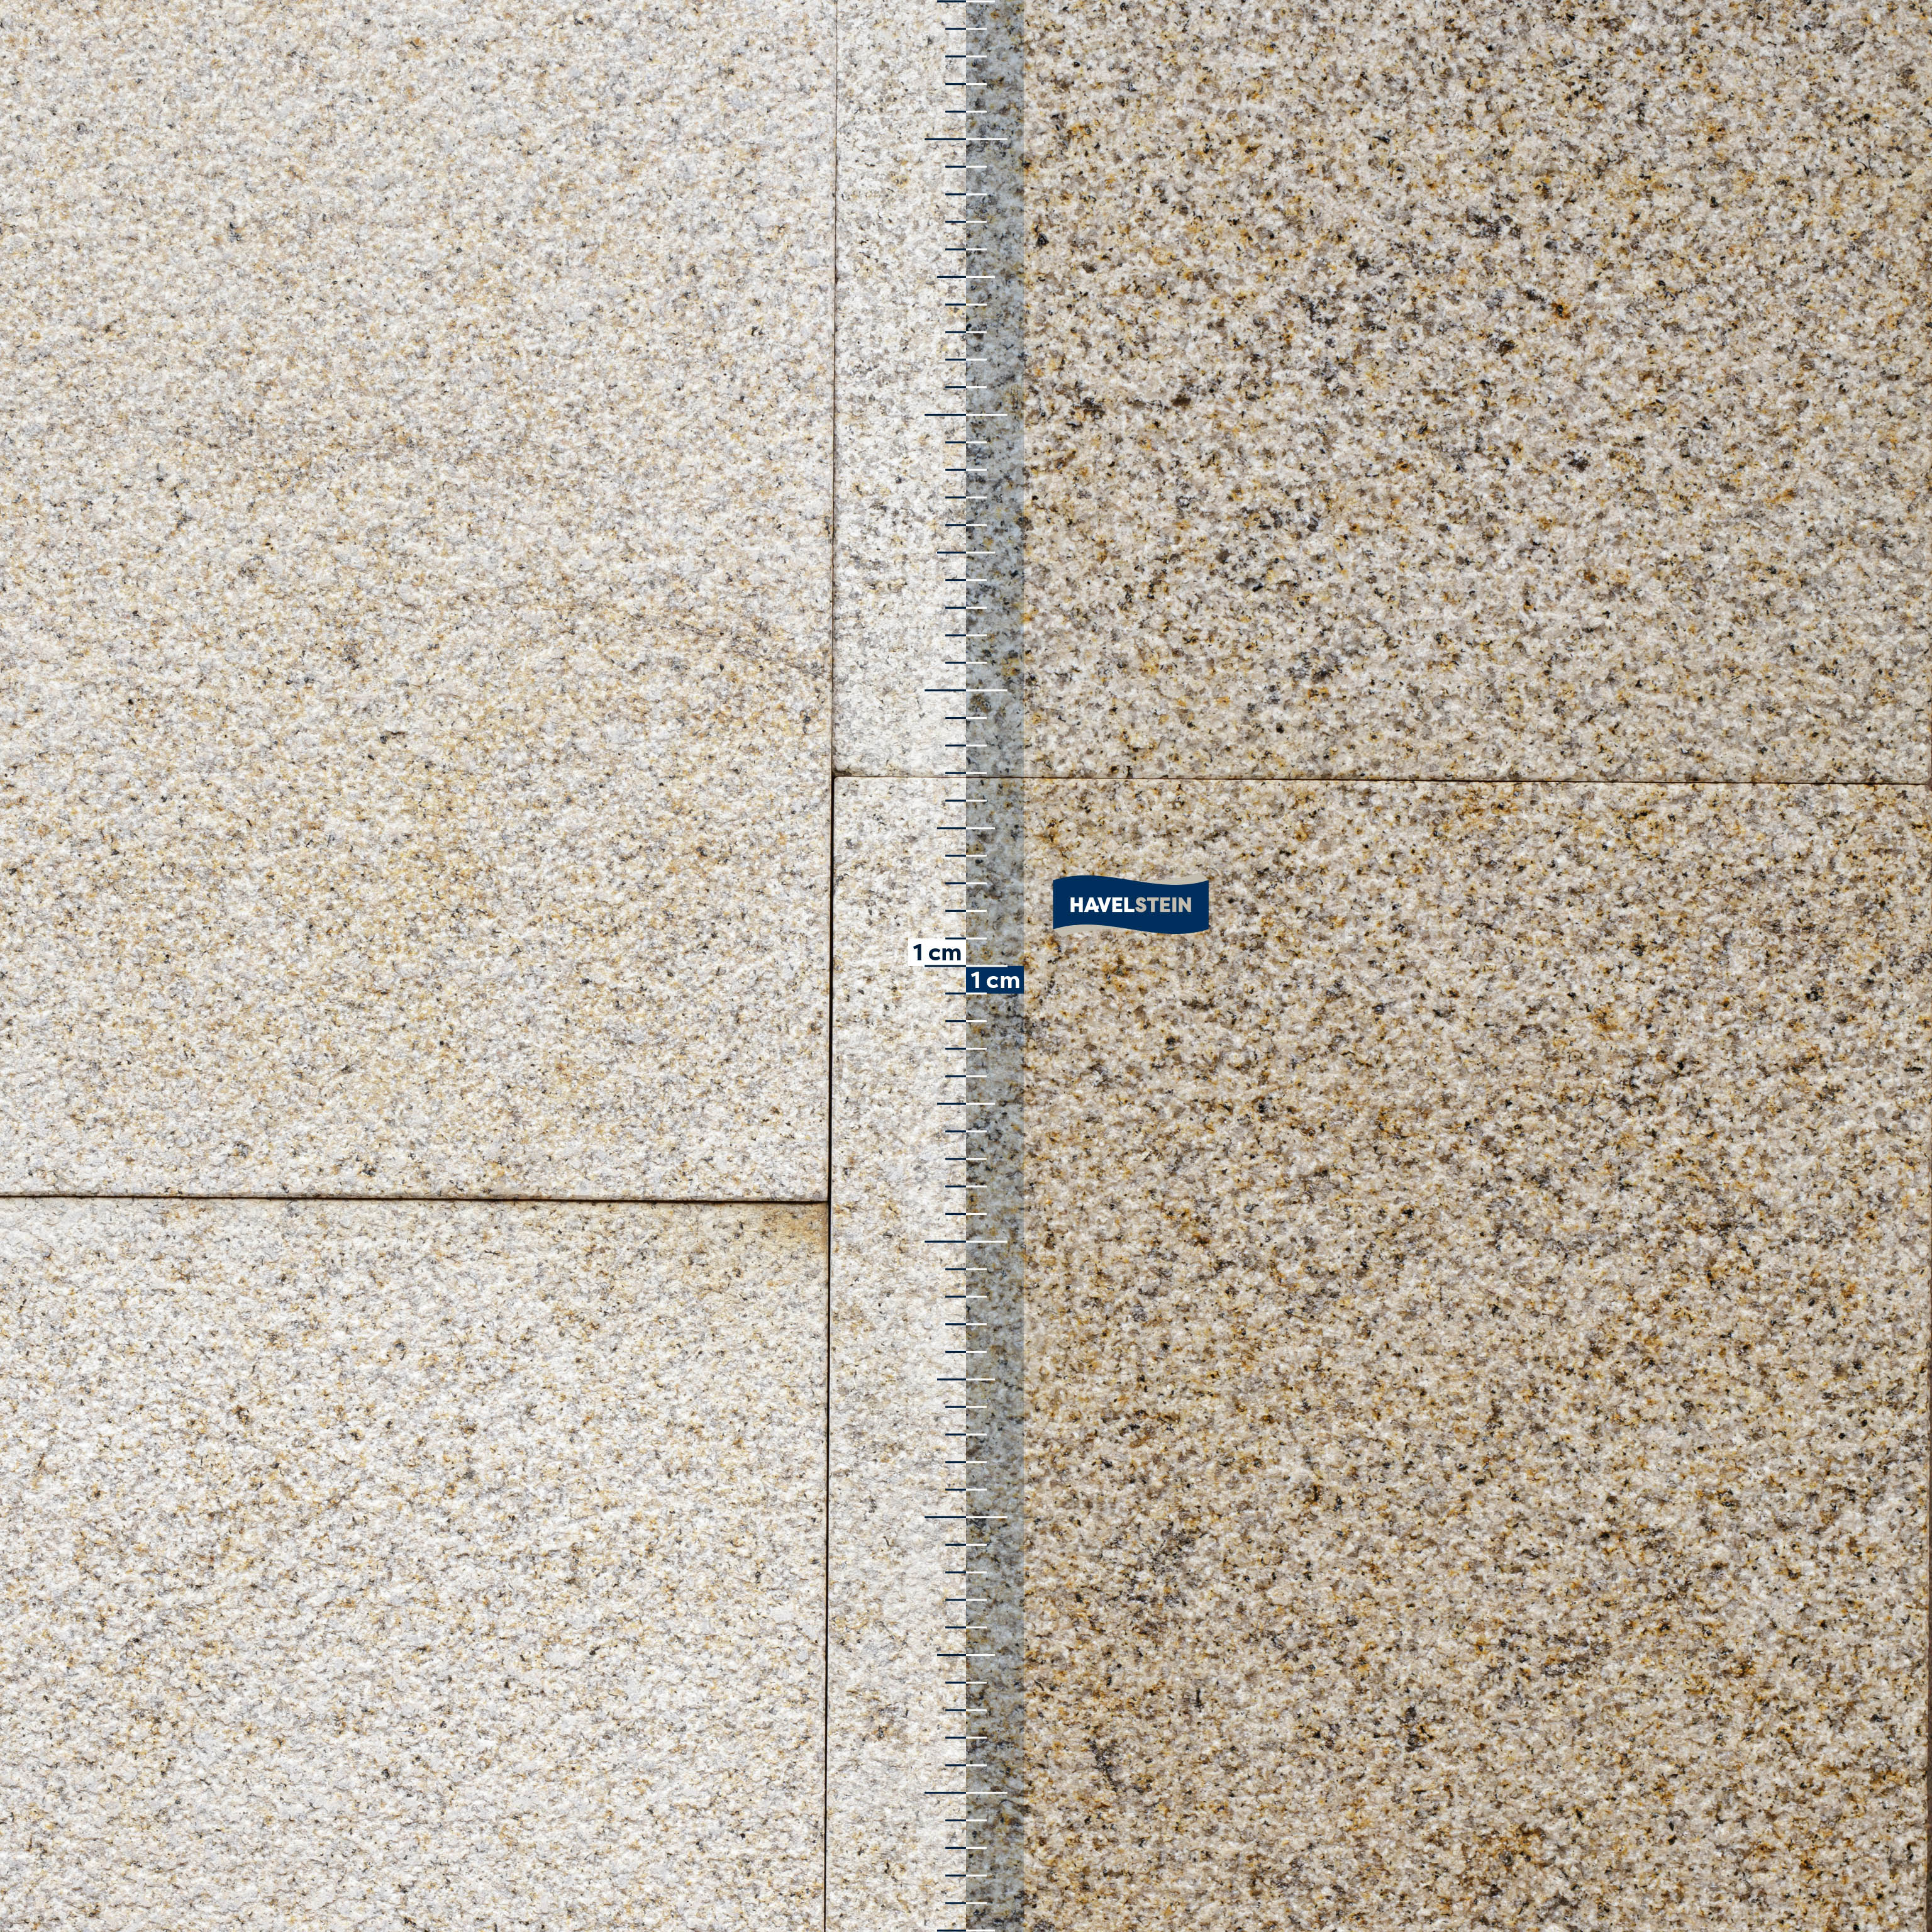 Terrassenplatten, Granit gelb (Camel) gestockt, Granit Platte, 60 x 40 x 3 cm, gelb, Oberfläche gesägt und gestockt